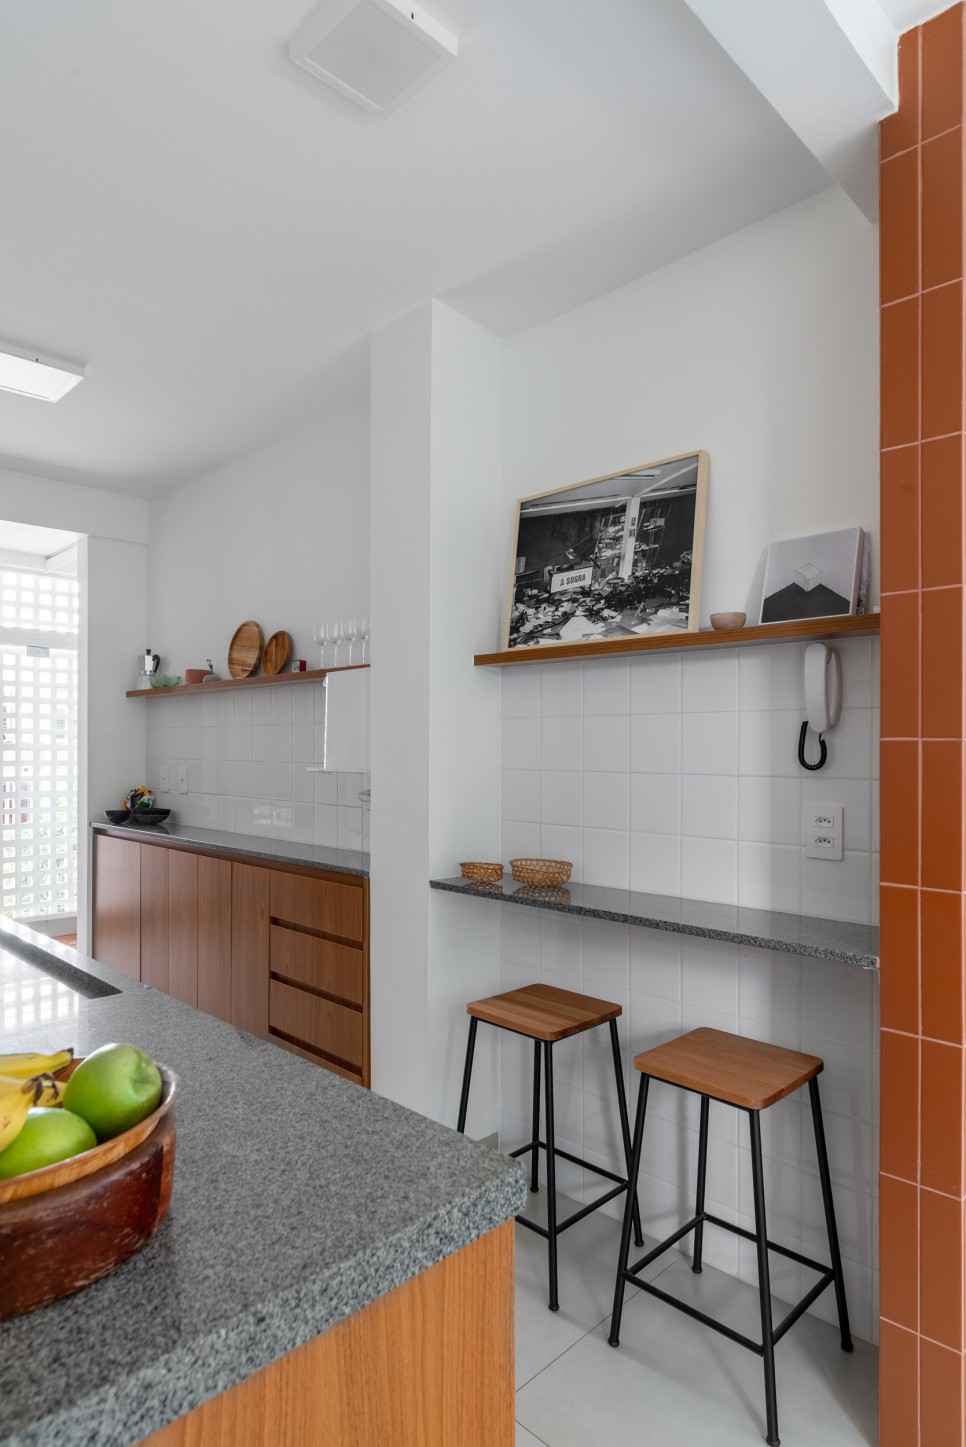 발코니에 욕조? 라이프스타일에 최적화한, 순환 동선 구조의 아파트, Mangueira Apartment by Coarquitetos